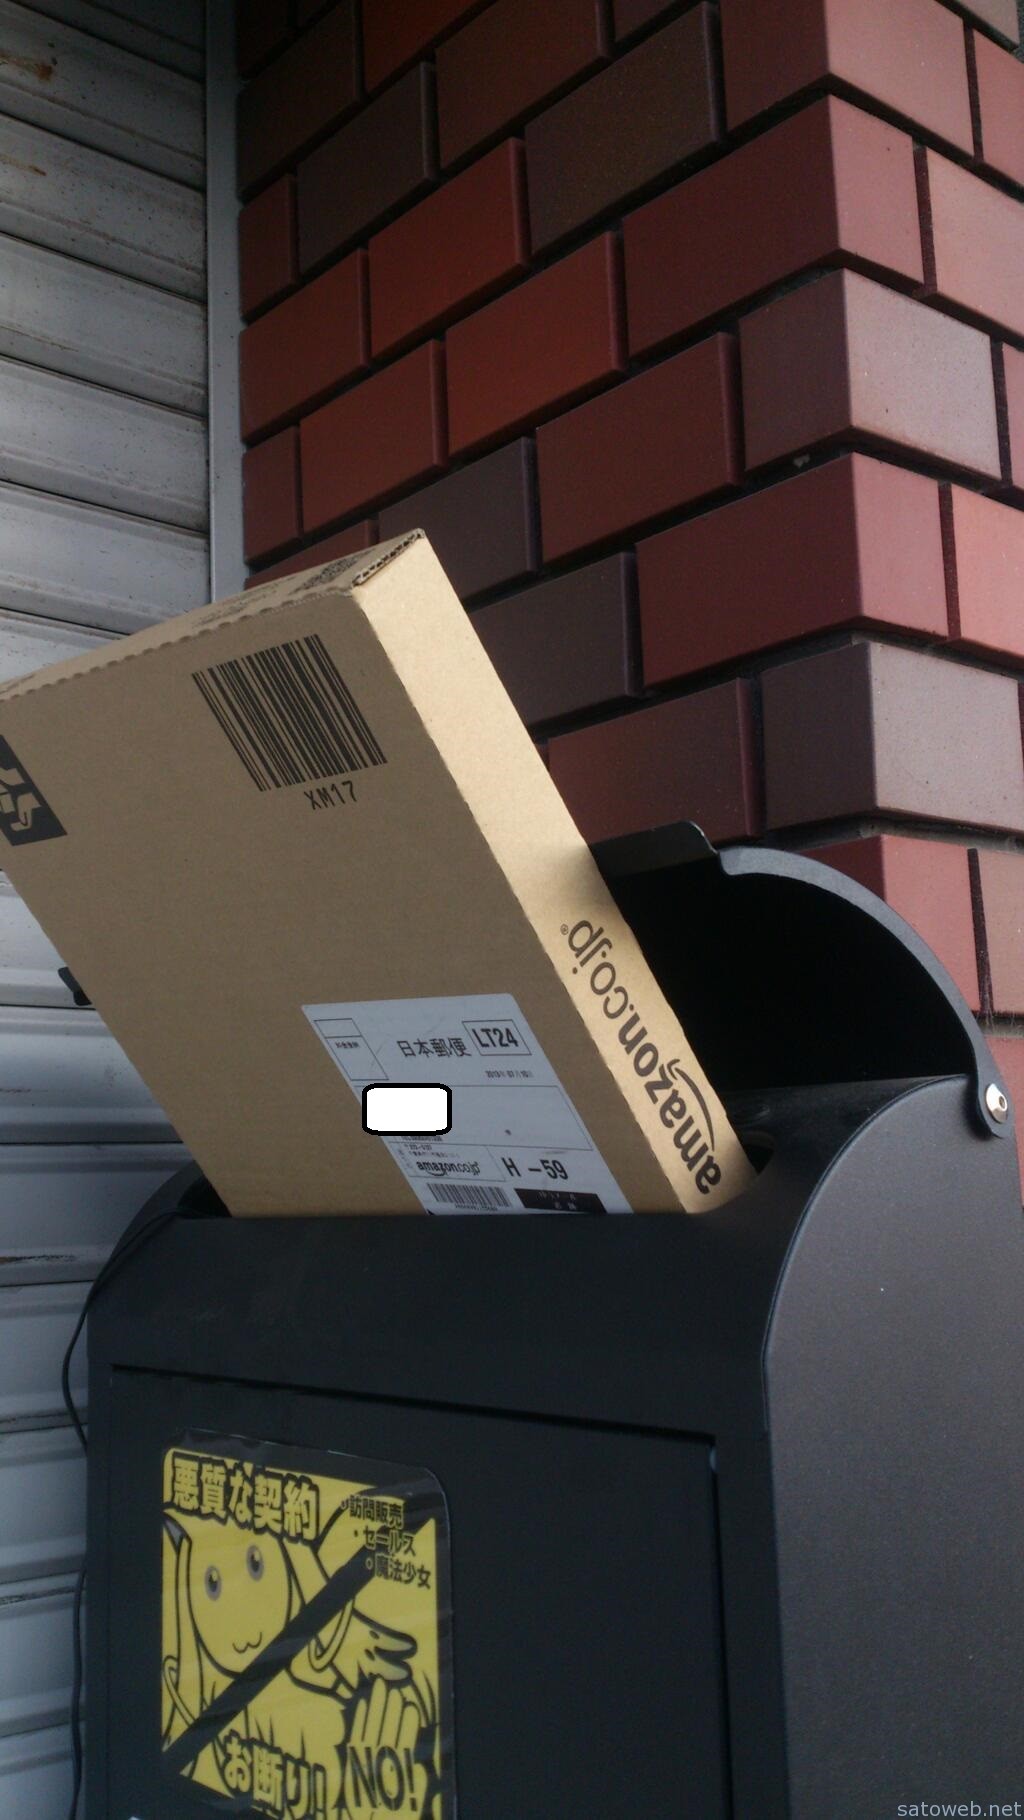 マーケットプレイス品のamazon発送を注文したら 日本郵便にまさかの配送方法をされた件について Satoweb Blog